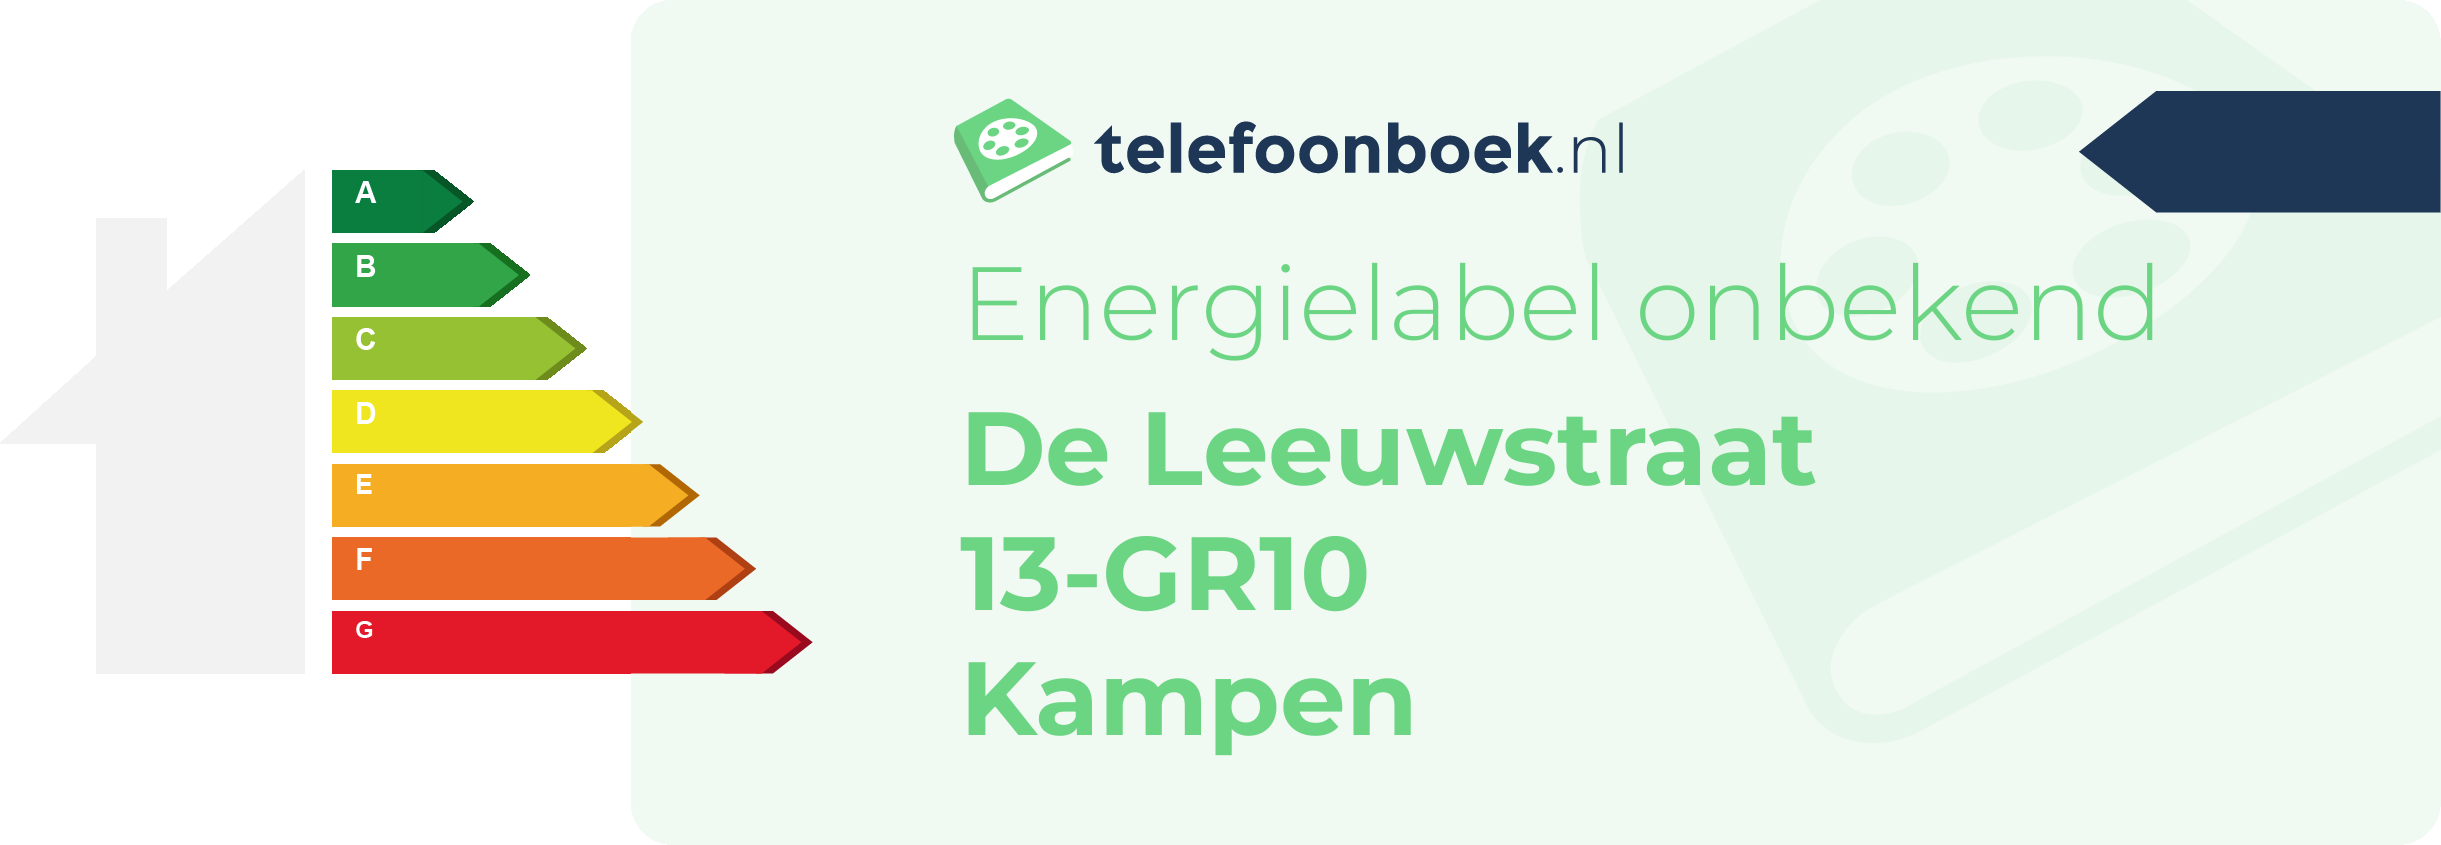 Energielabel De Leeuwstraat 13-GR10 Kampen